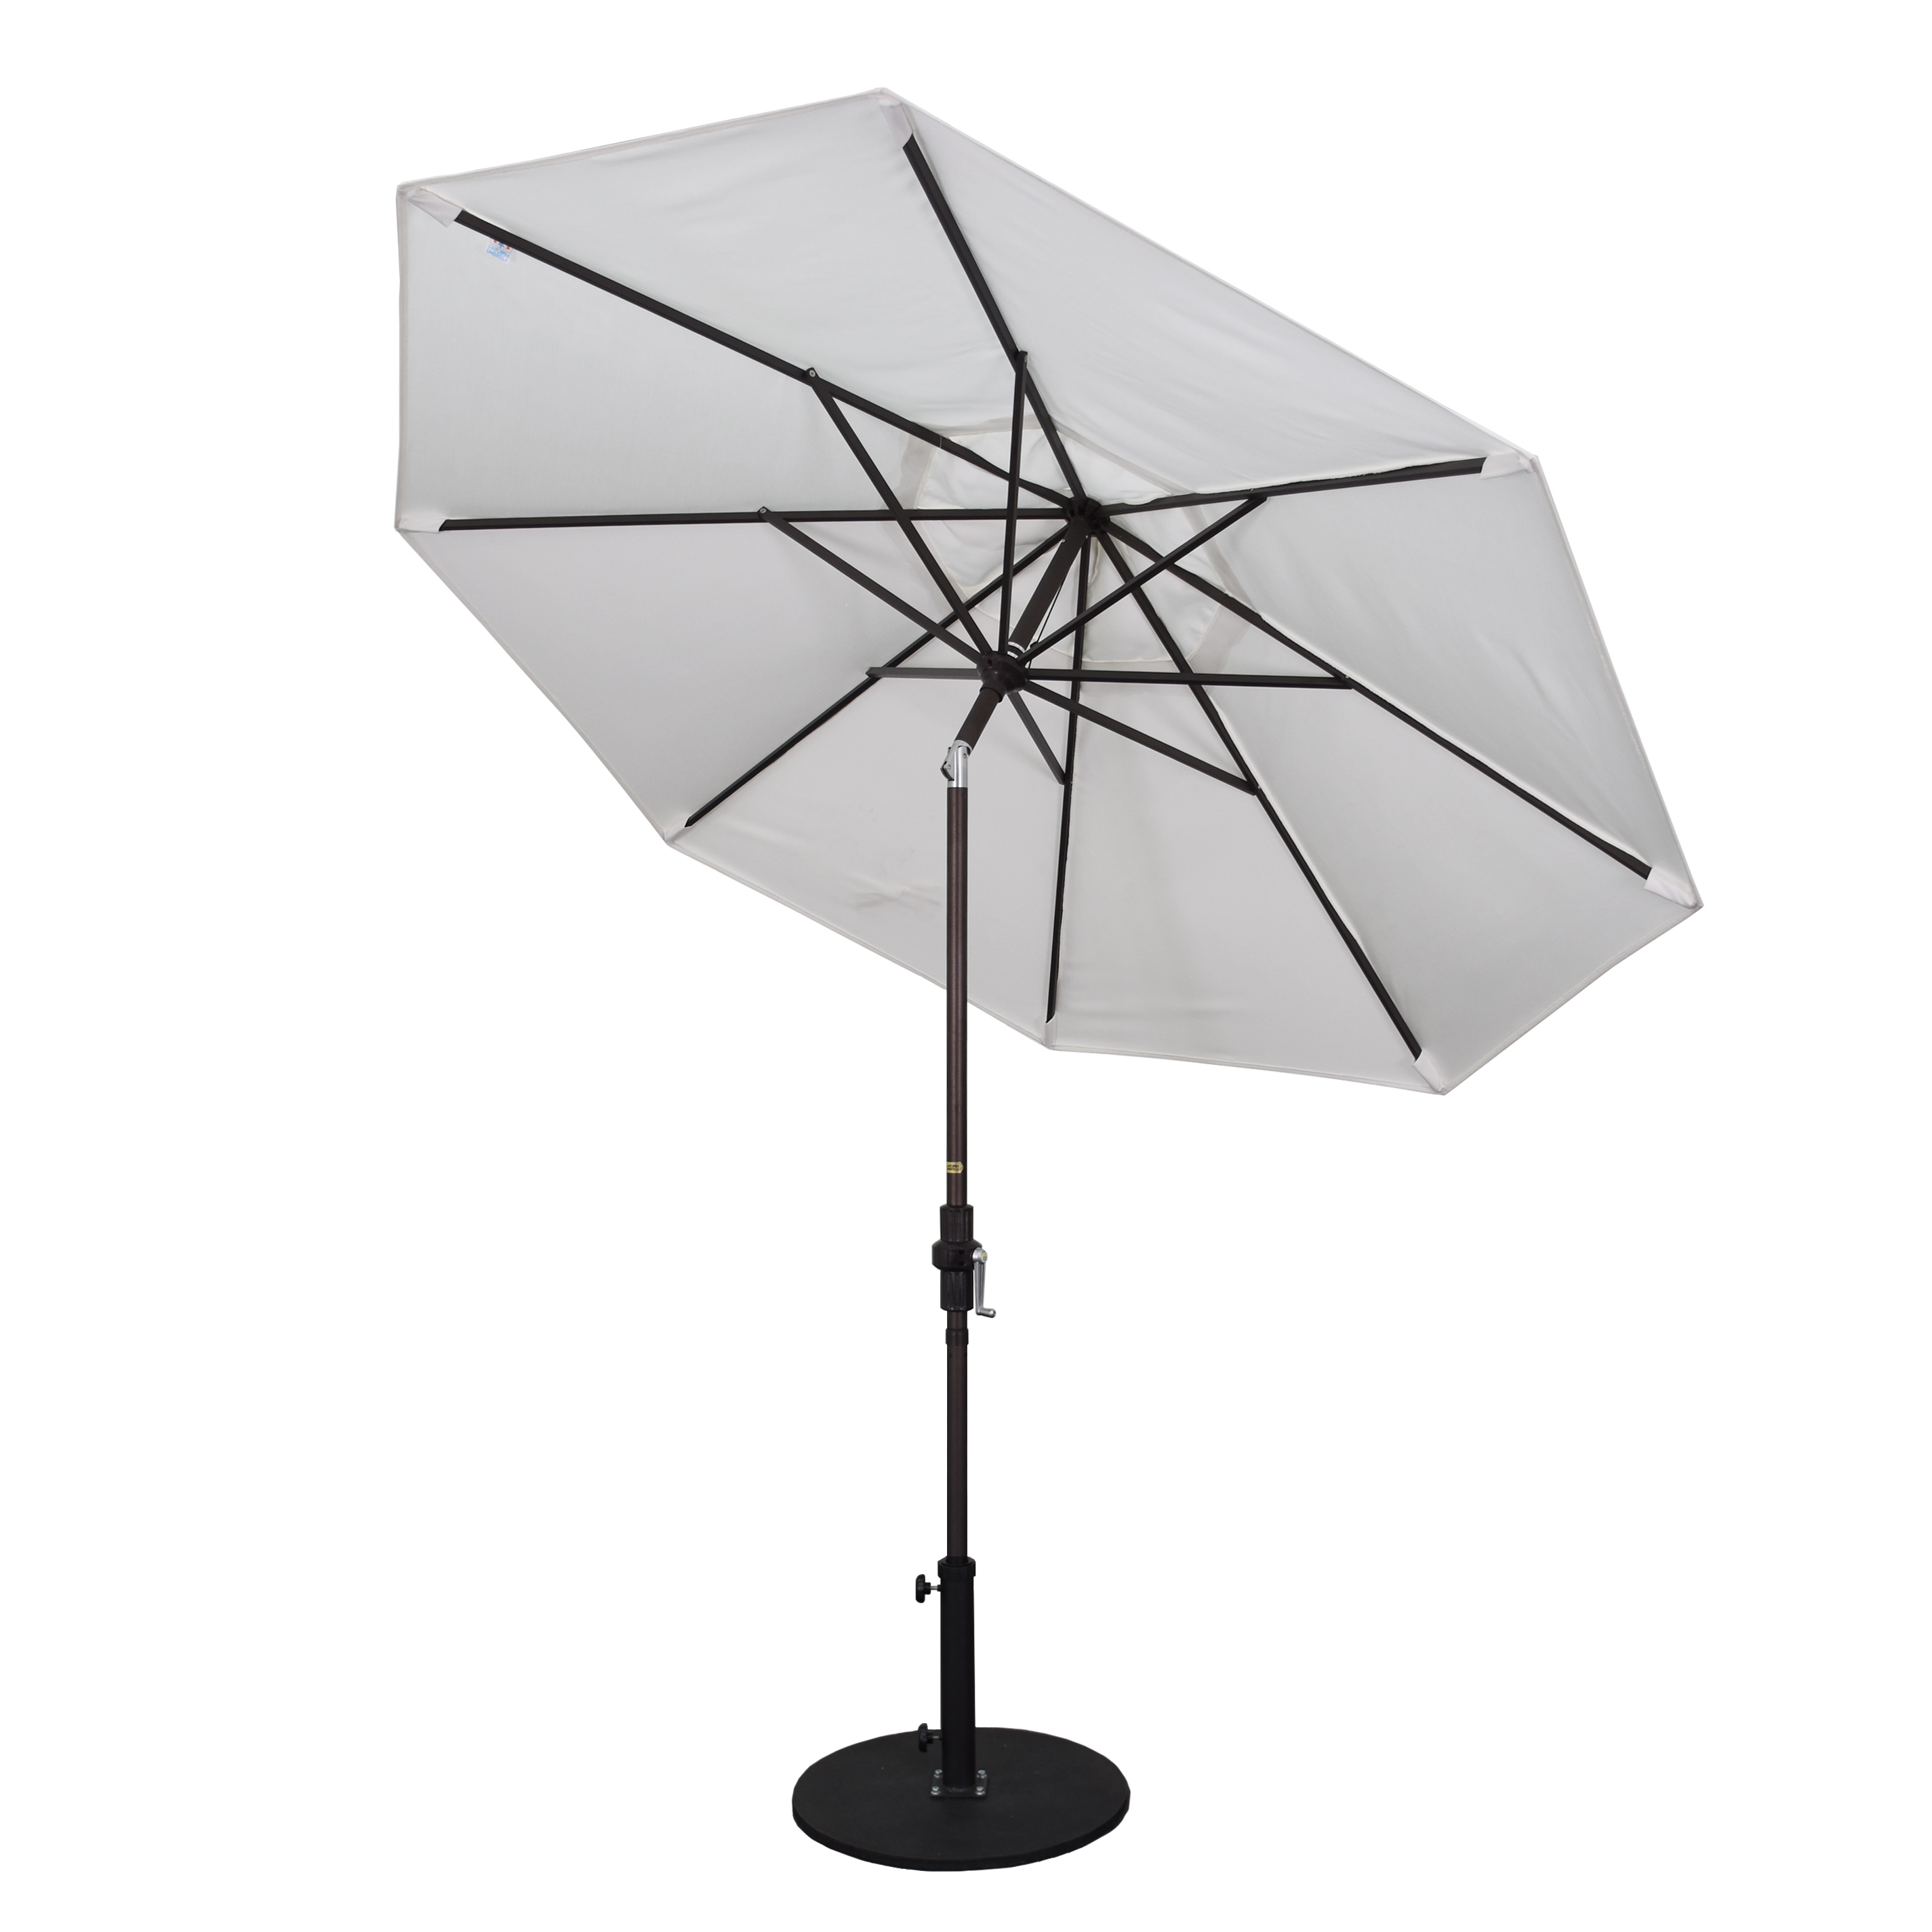 California Umbrella 9 ft. Golden State Series Patio Umbrella With Bronze Aluminum Pole
